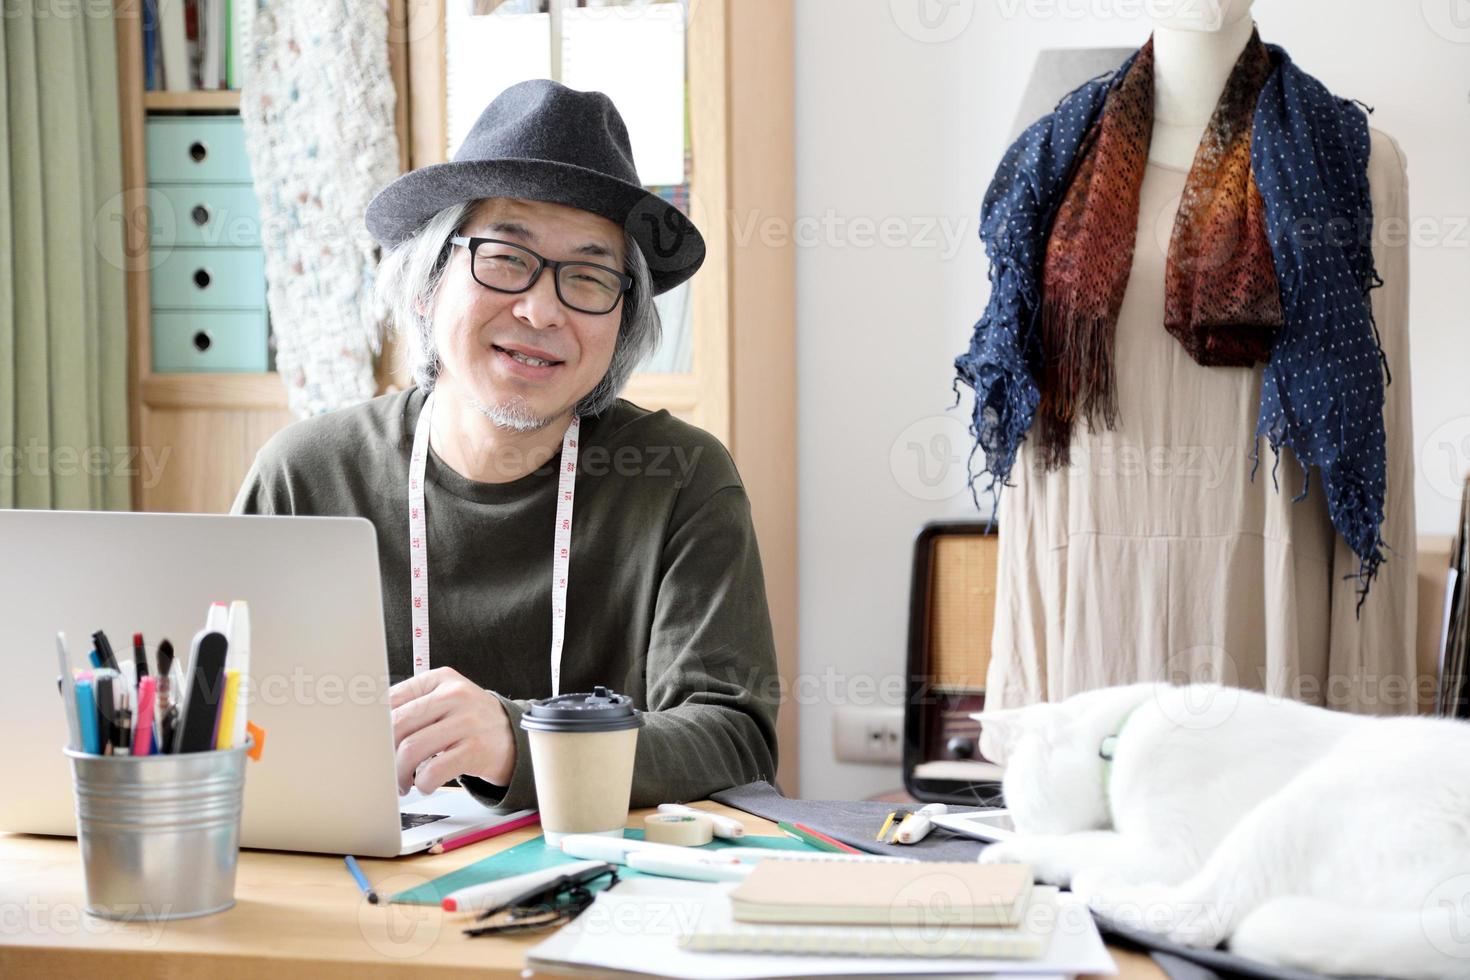 asiatischer Modedesigner foto